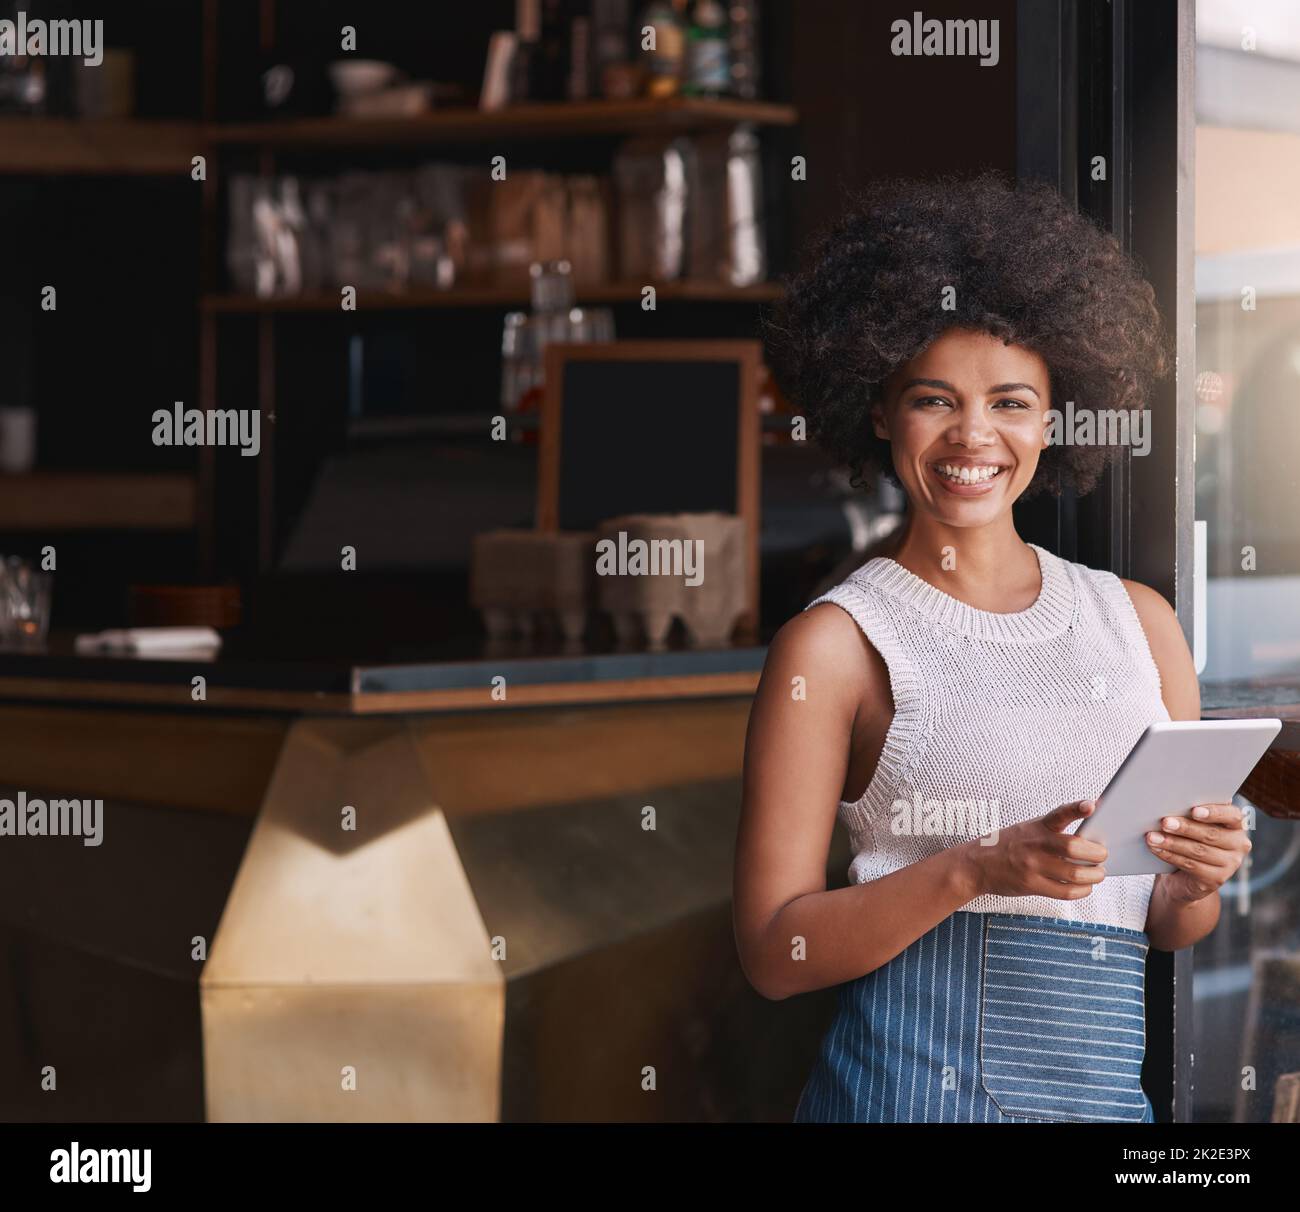 Wir aktualisieren nur unser Online-Menü. Porträt einer glücklichen jungen Geschäftsbesitzerin, die ihr Tablet benutzt, während sie in ihrem Café steht. Stockfoto